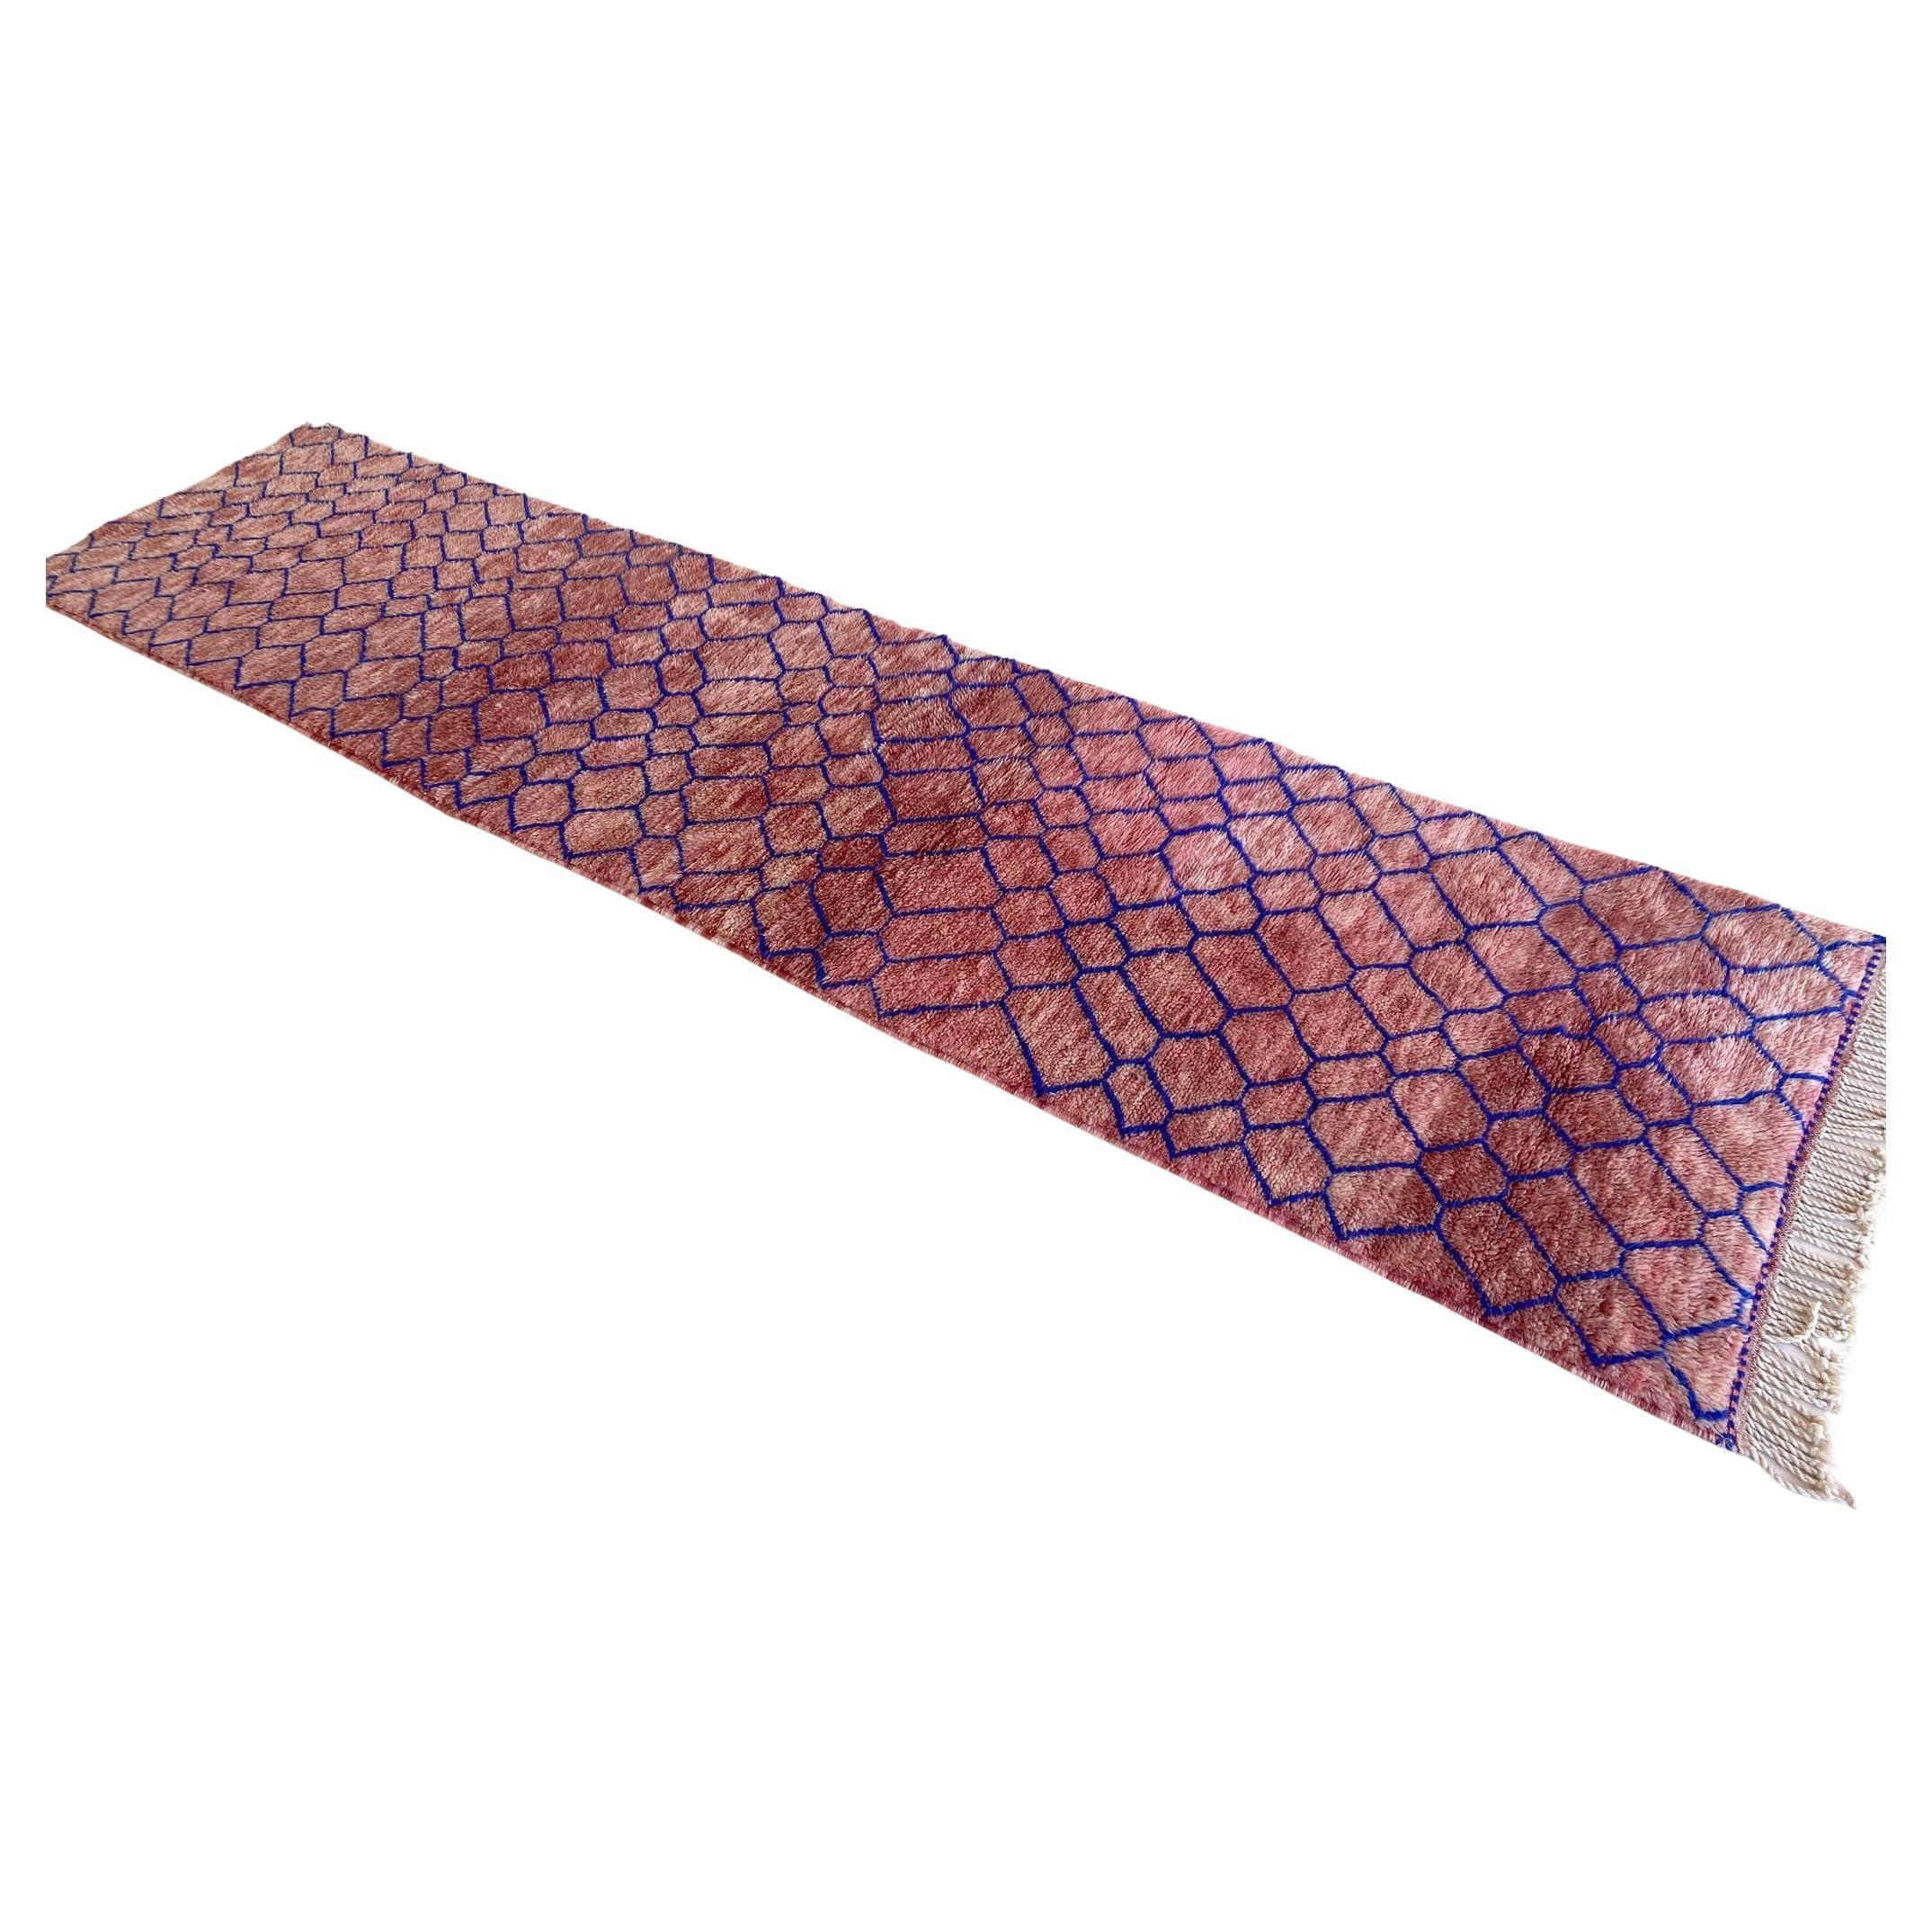 Modern Moroccan wool Mrirt runner rug - Pink/blue - 3.1x13.4feet / 95x408cm